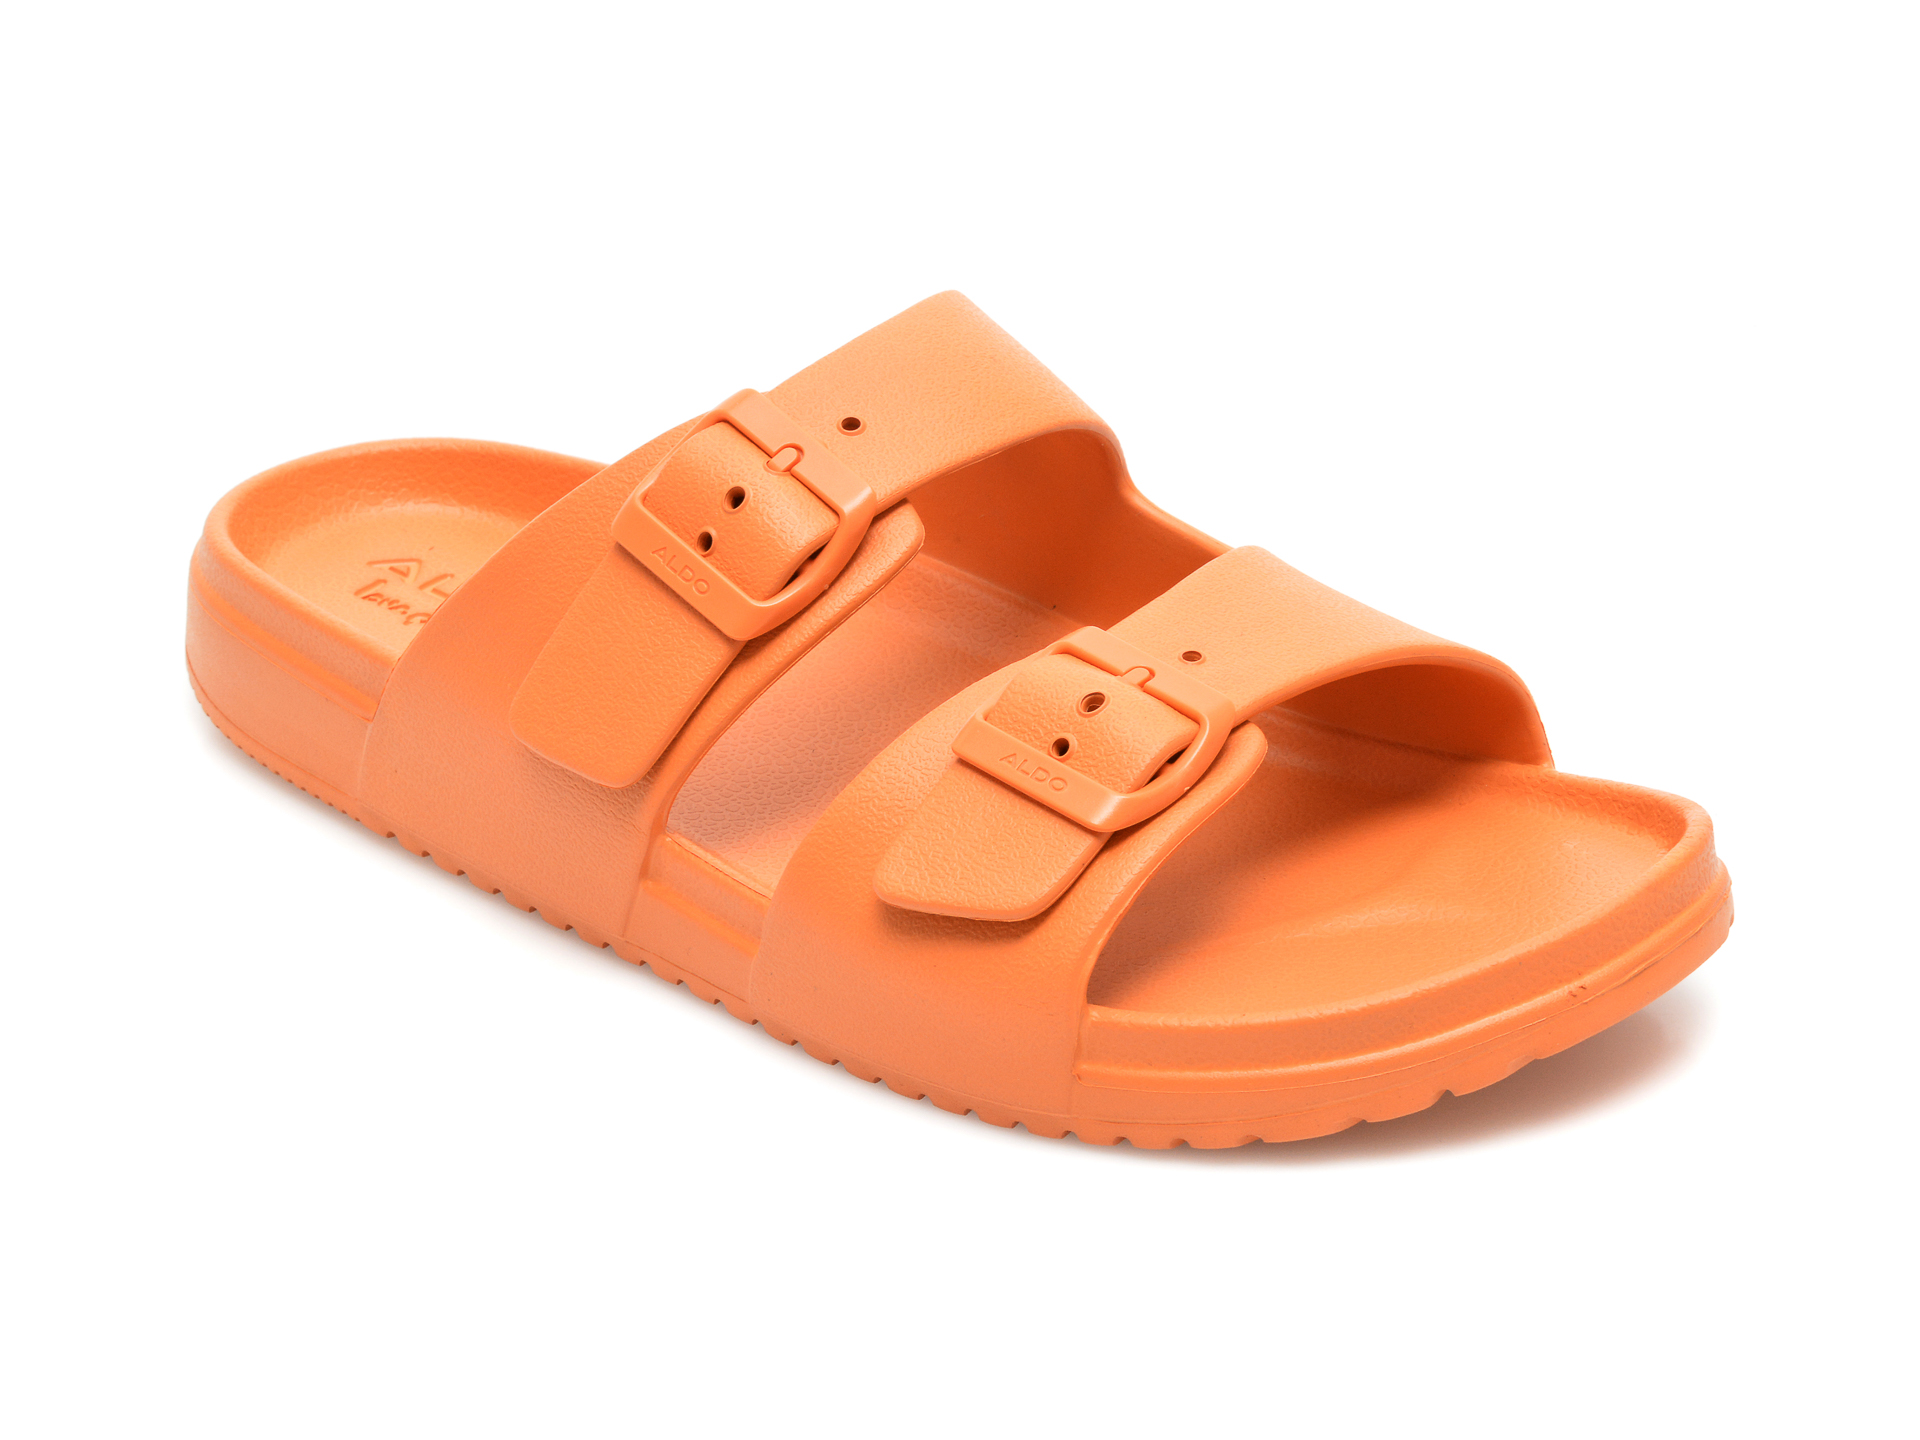 Papuci ALDO portocalii, Hideo800, din pvc Aldo Aldo